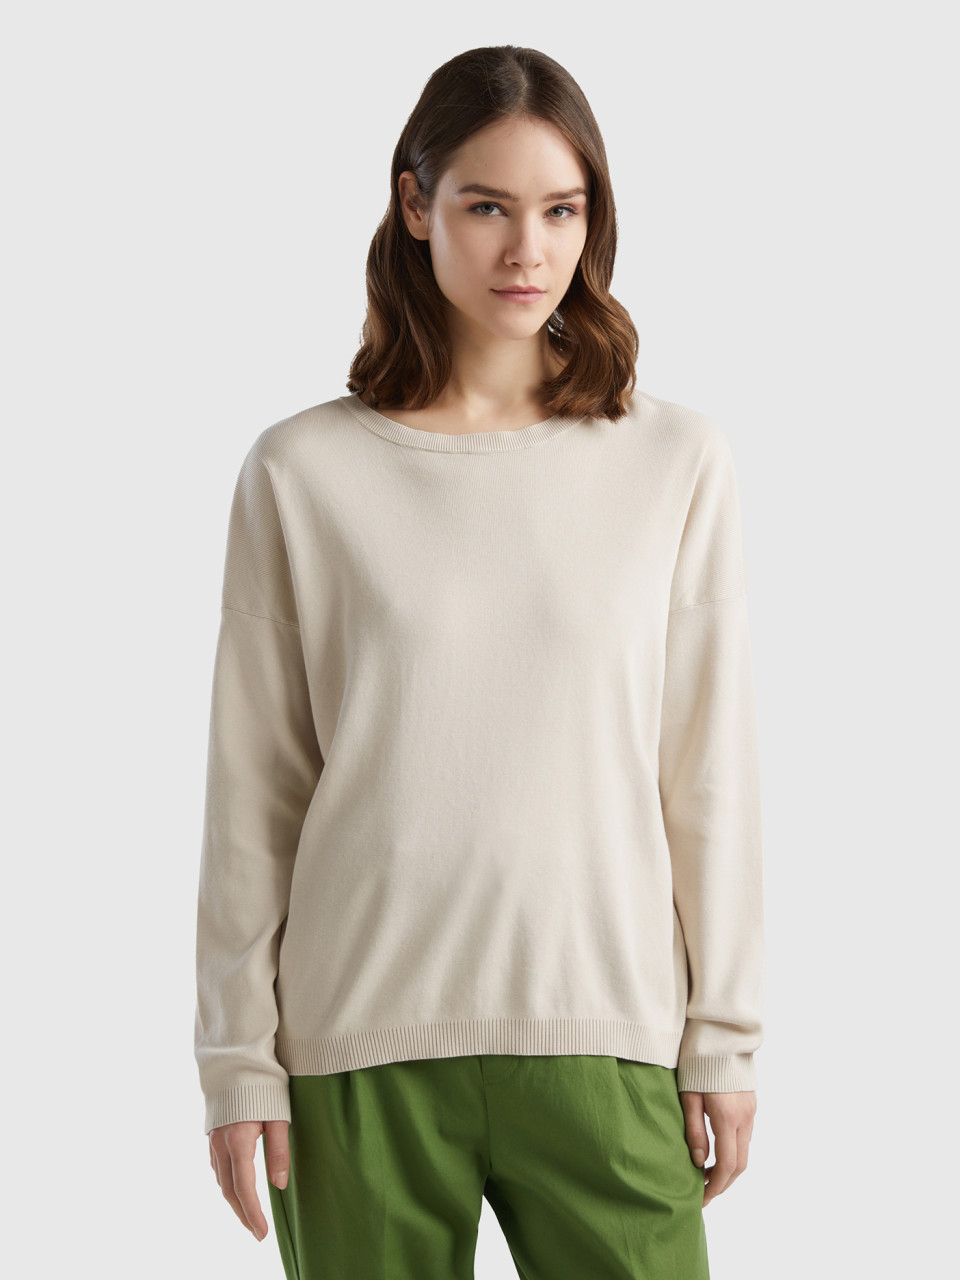 Benetton, Cotton Sweater With Round Neck, Beige, Women